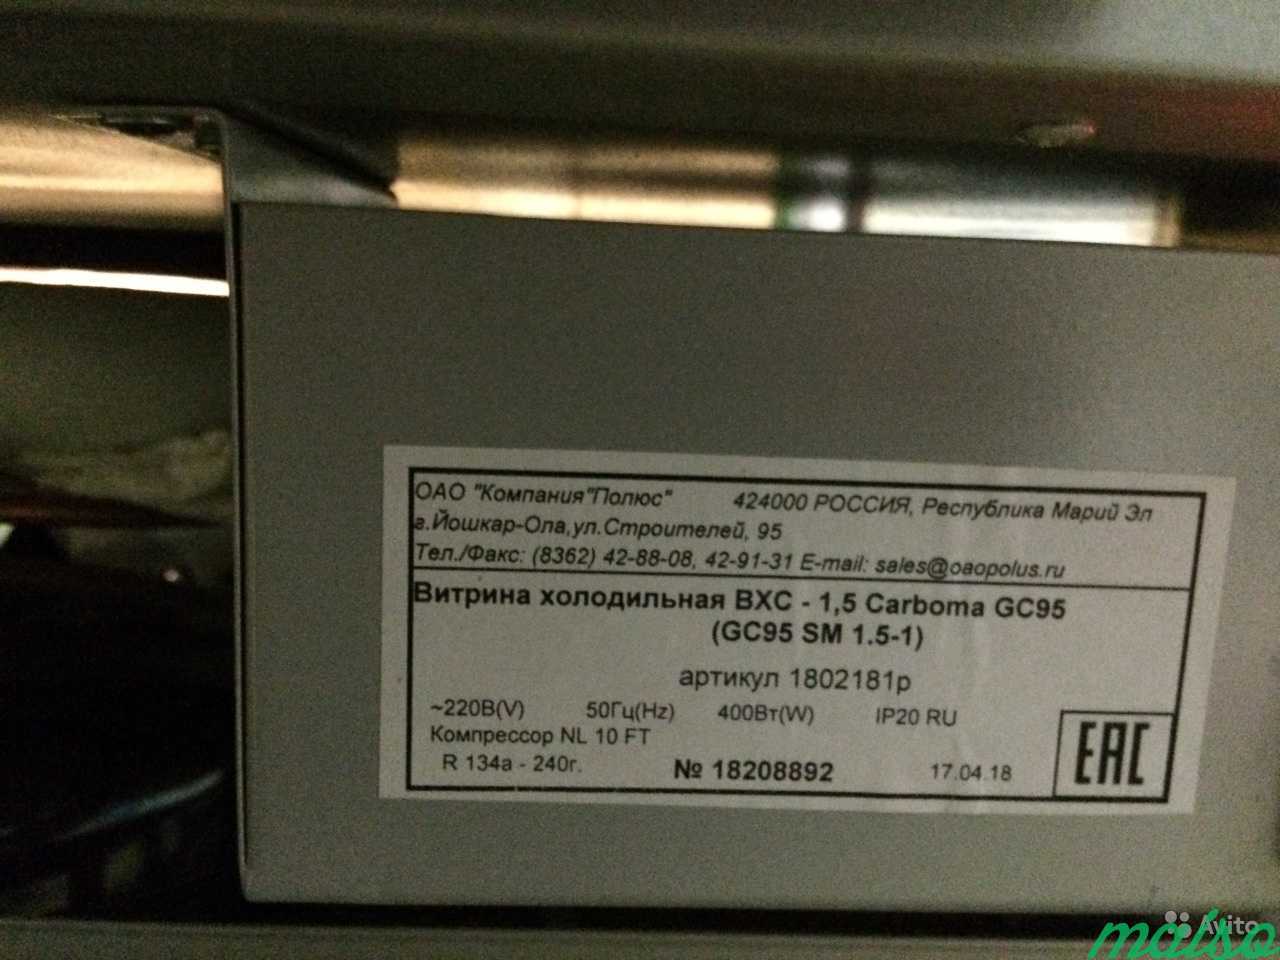 Холодильная ветрина, вакумный упаковщик, вывеска в Москве. Фото 4